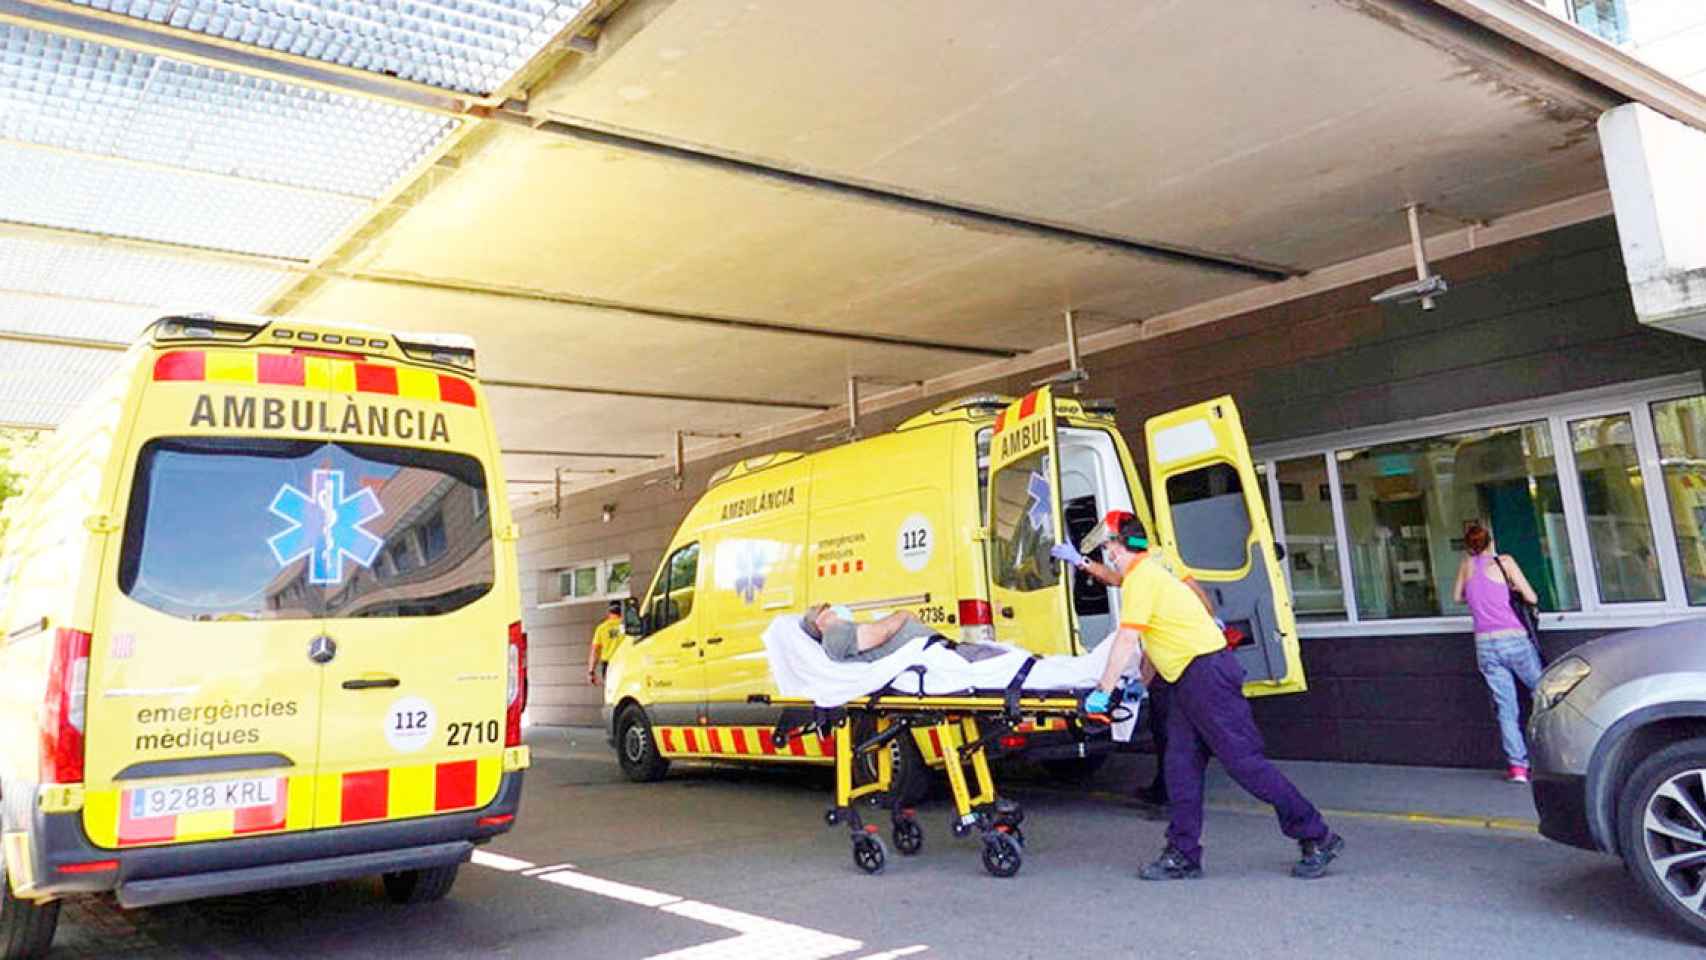 Imagen de ambulancias en el Hospital Joan XXIII de Tarragona